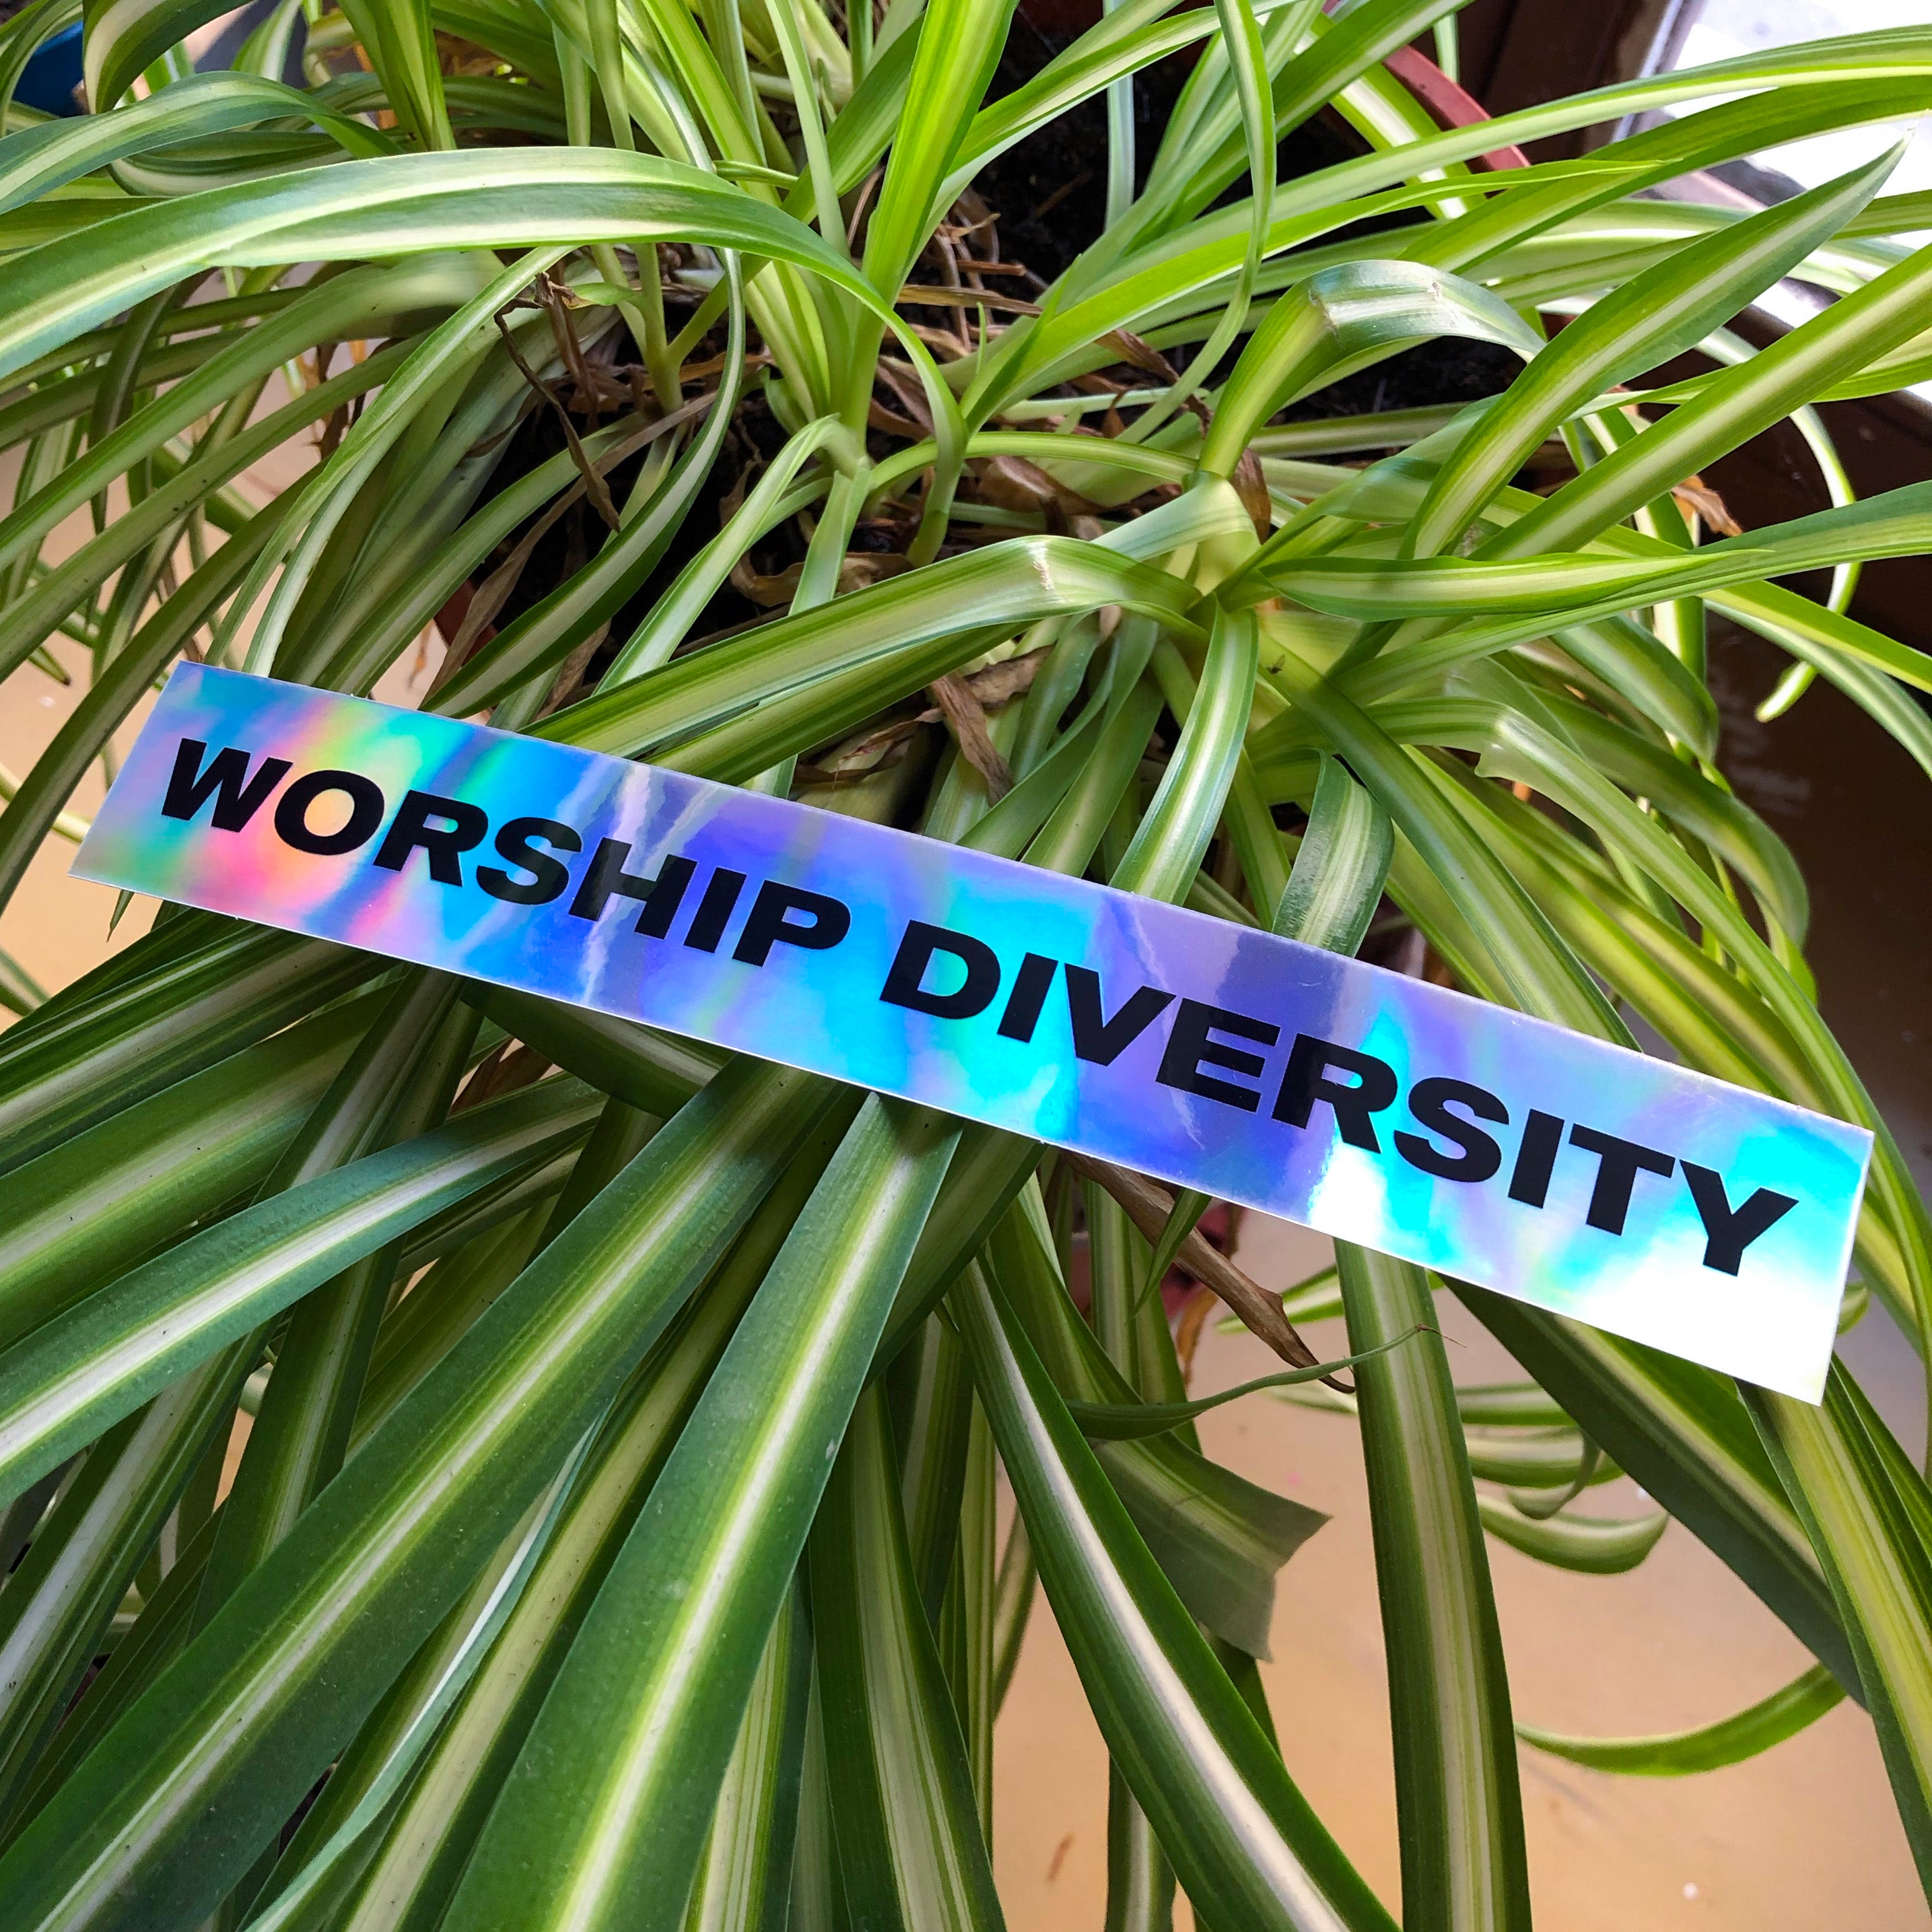 "Worship diversity" sticker